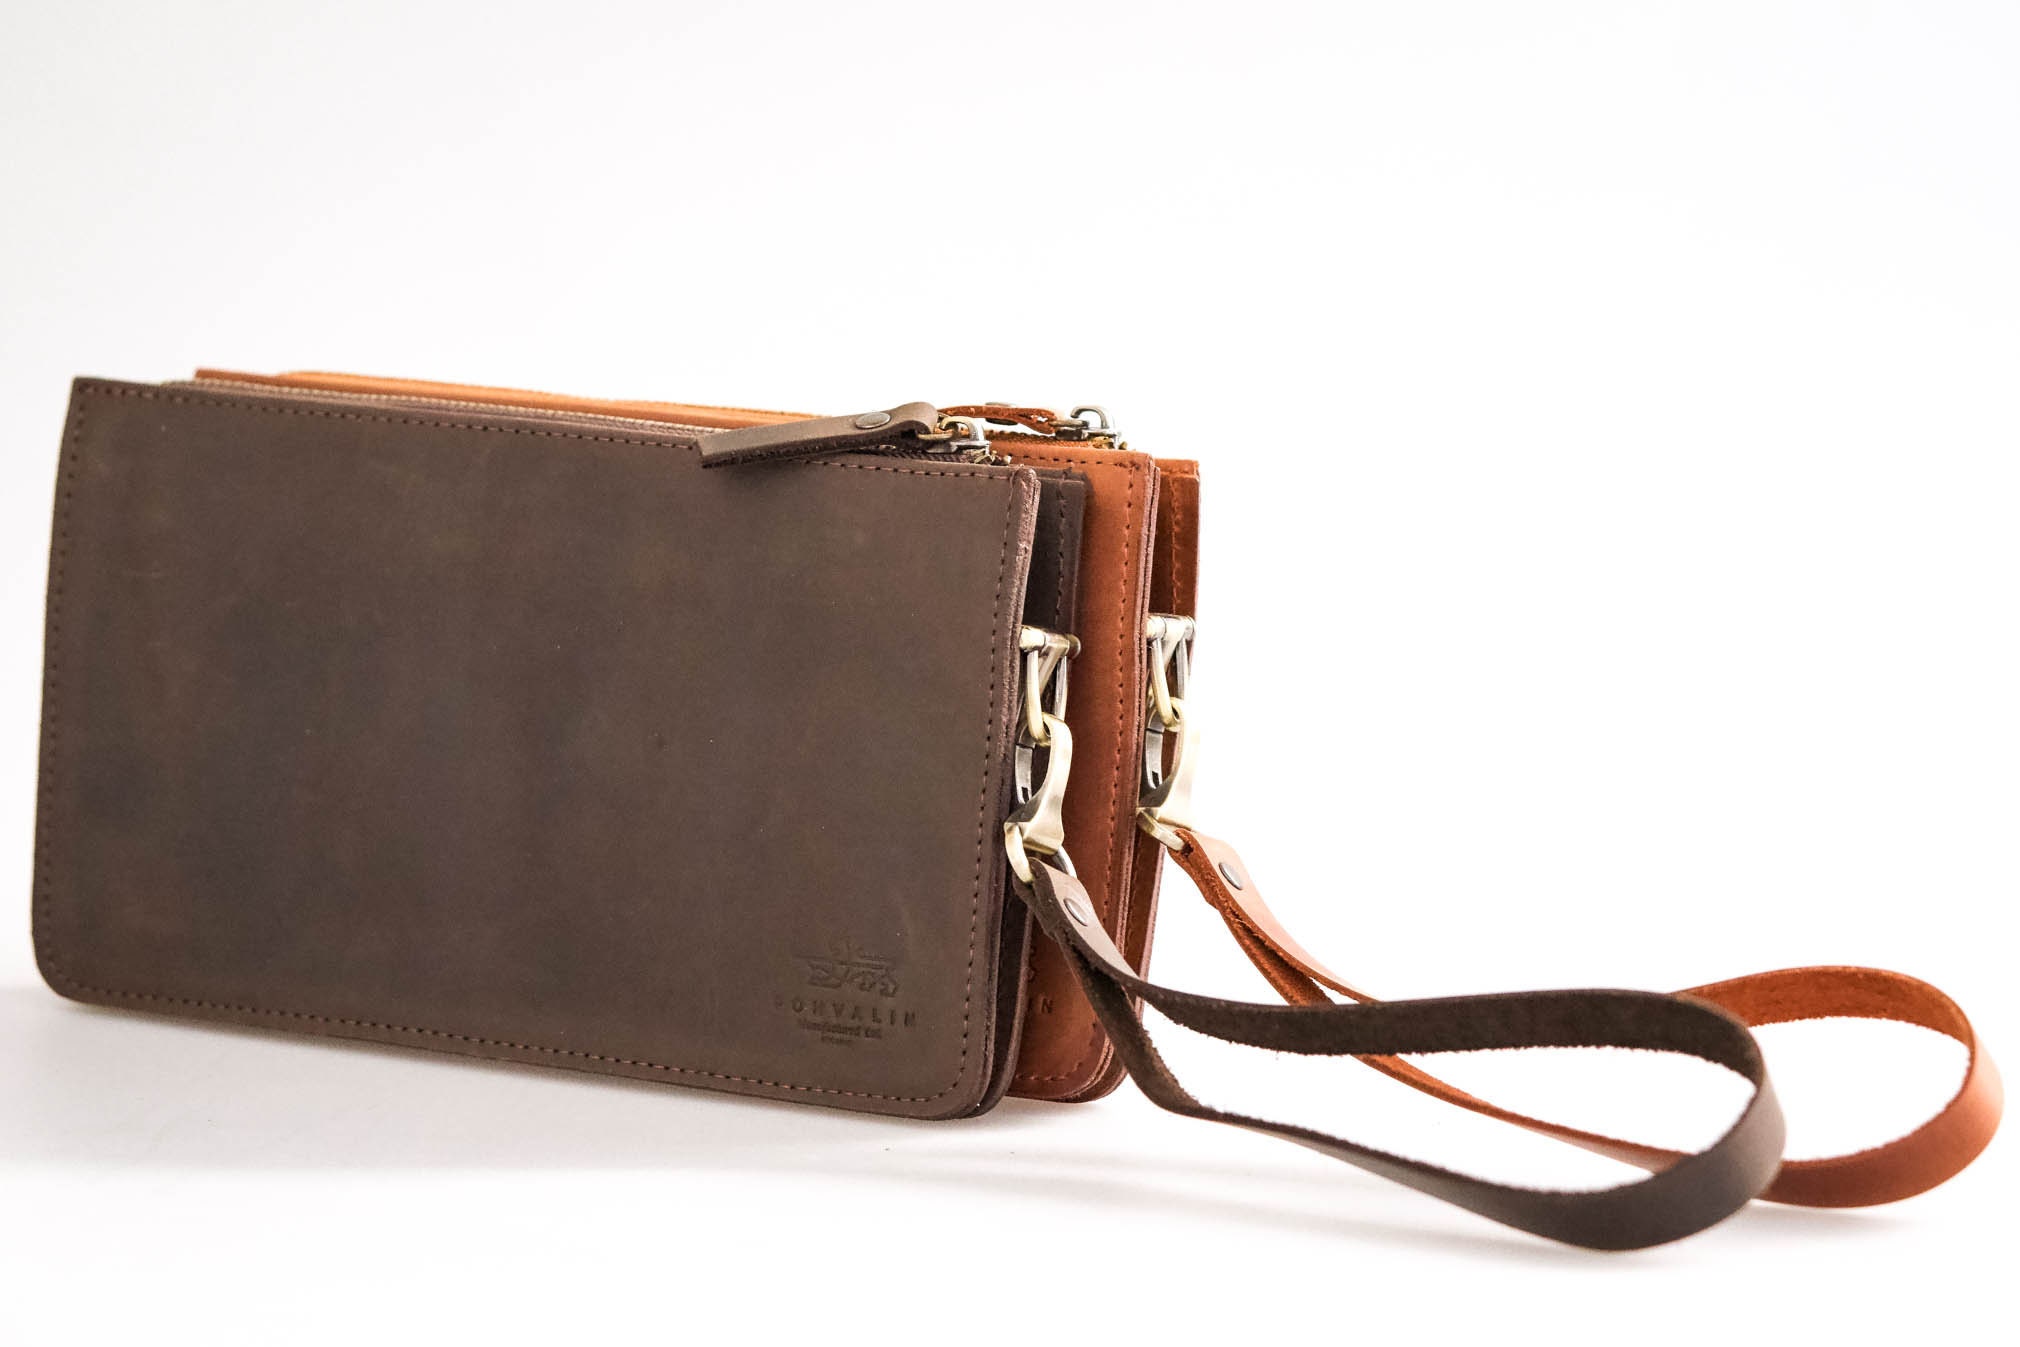 New Vintage Unisex Leather Handbags Envelope Clutch Bag Male Business A4  Portfolio Bag Men Leather Purse Briefcase